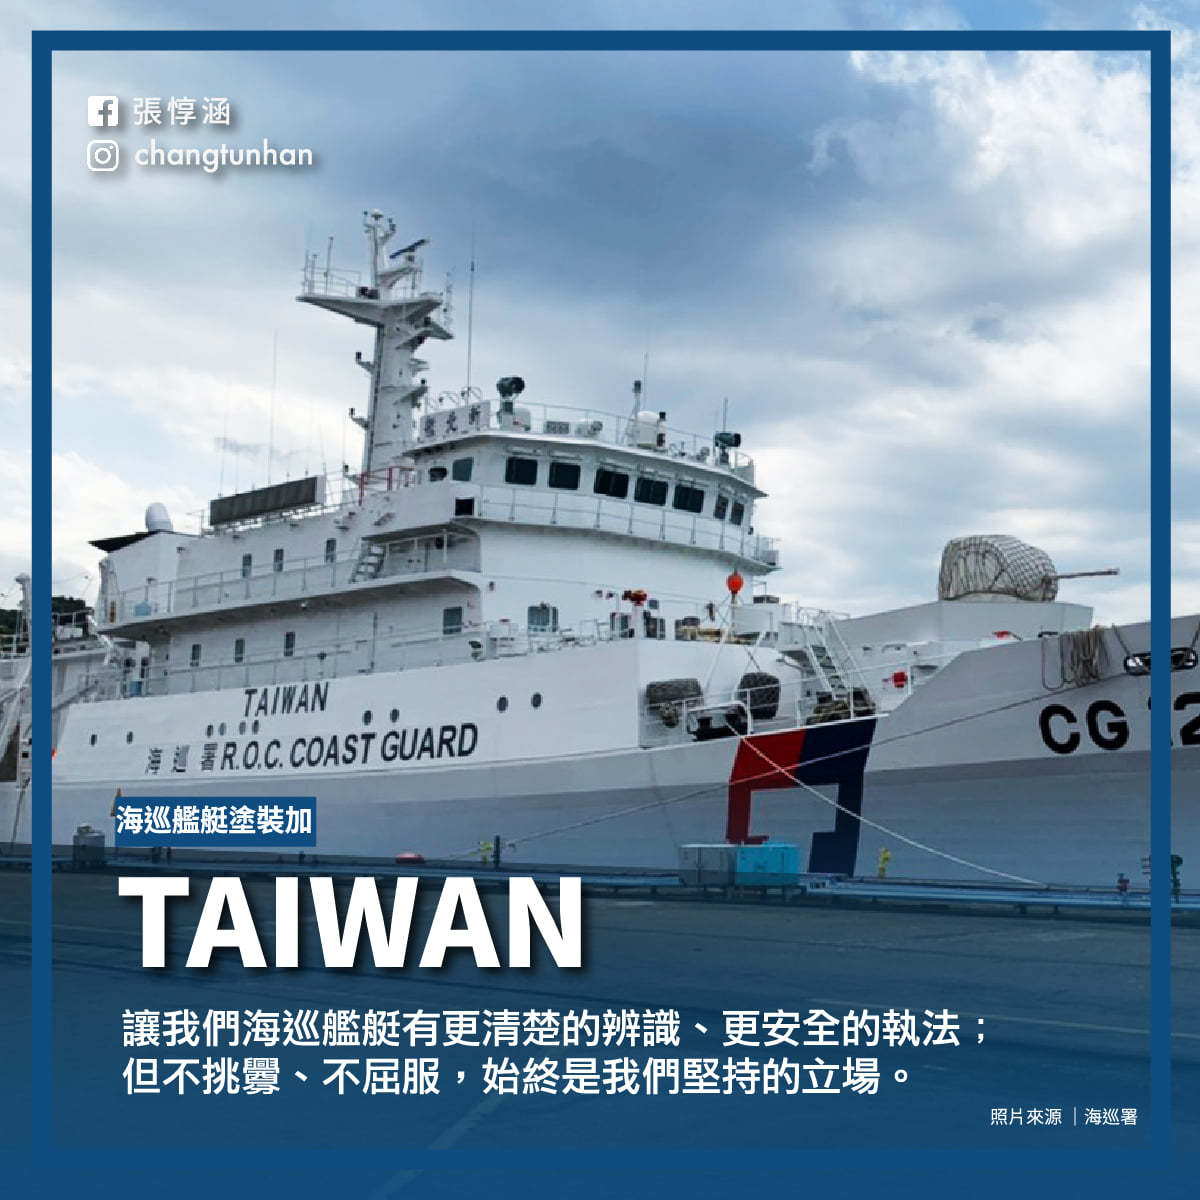 海巡艦艇加Taiwan字樣 府：蔡英文指示的 | 政治 | 新頭殼 Ne